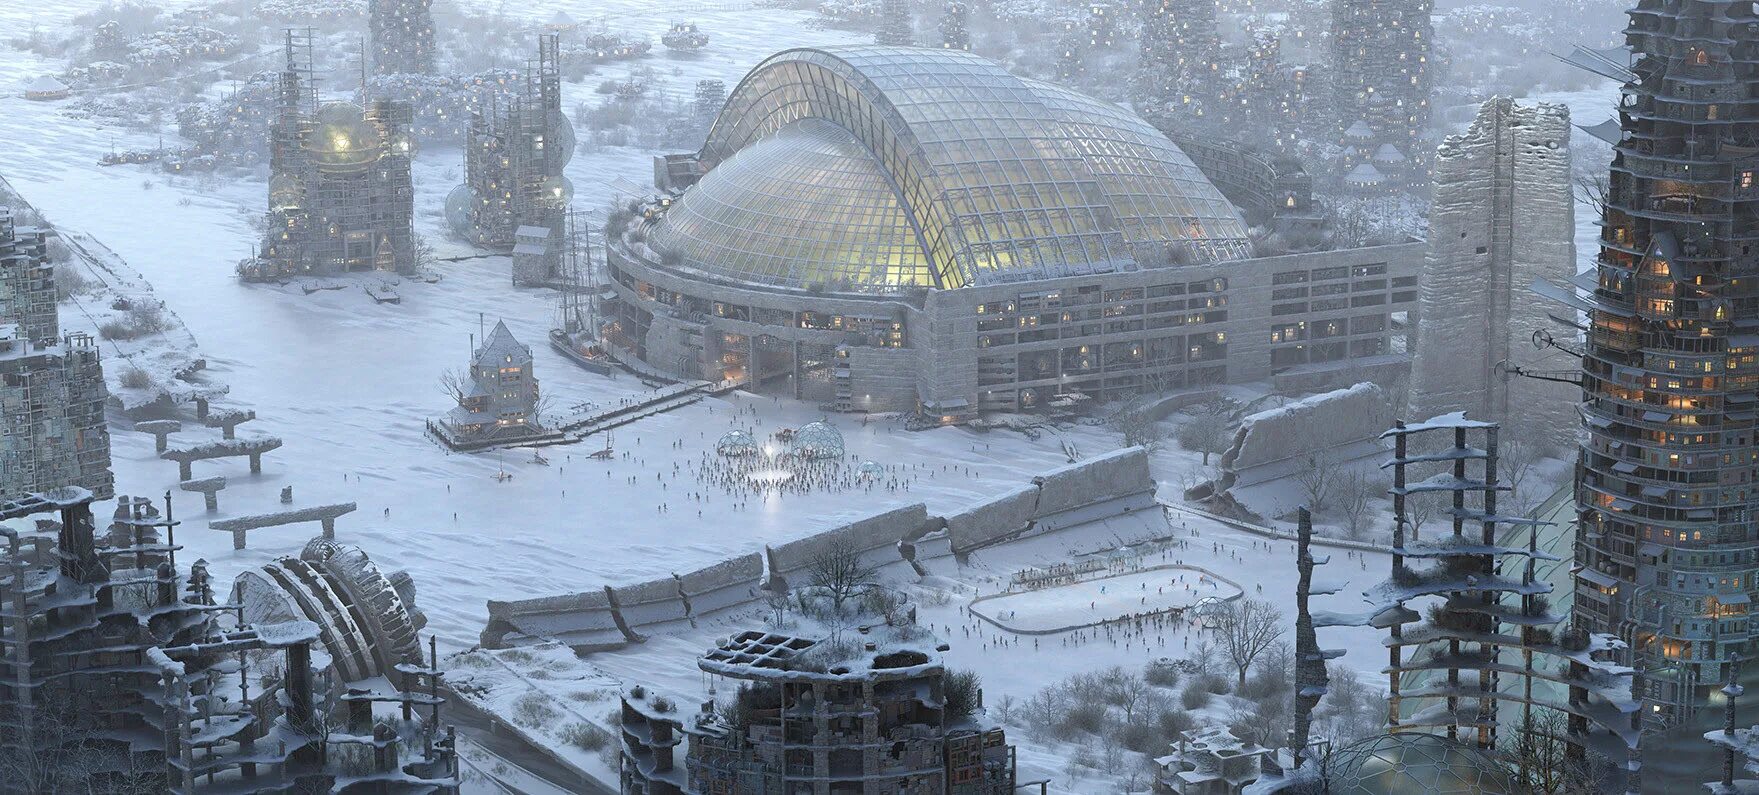 Будущая зима. Зимний город будущего. Город будущего зимой. Заснеженный город будущего. Город будущего в снегу.